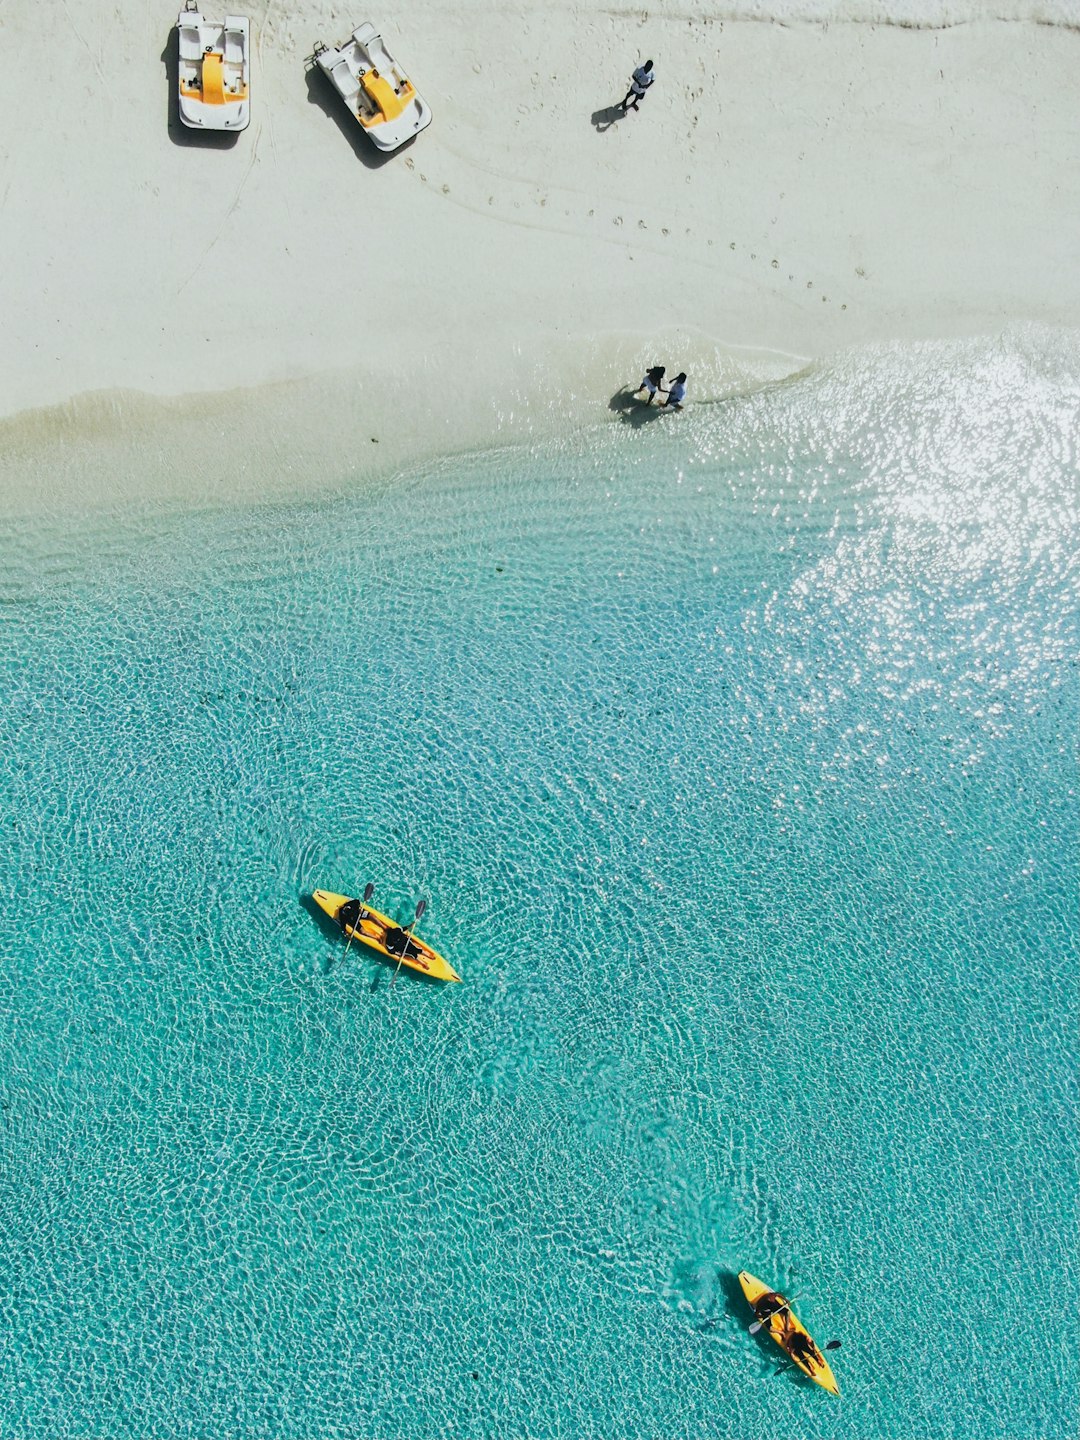 Body of water photo spot Maldive Islands Thinadhoo